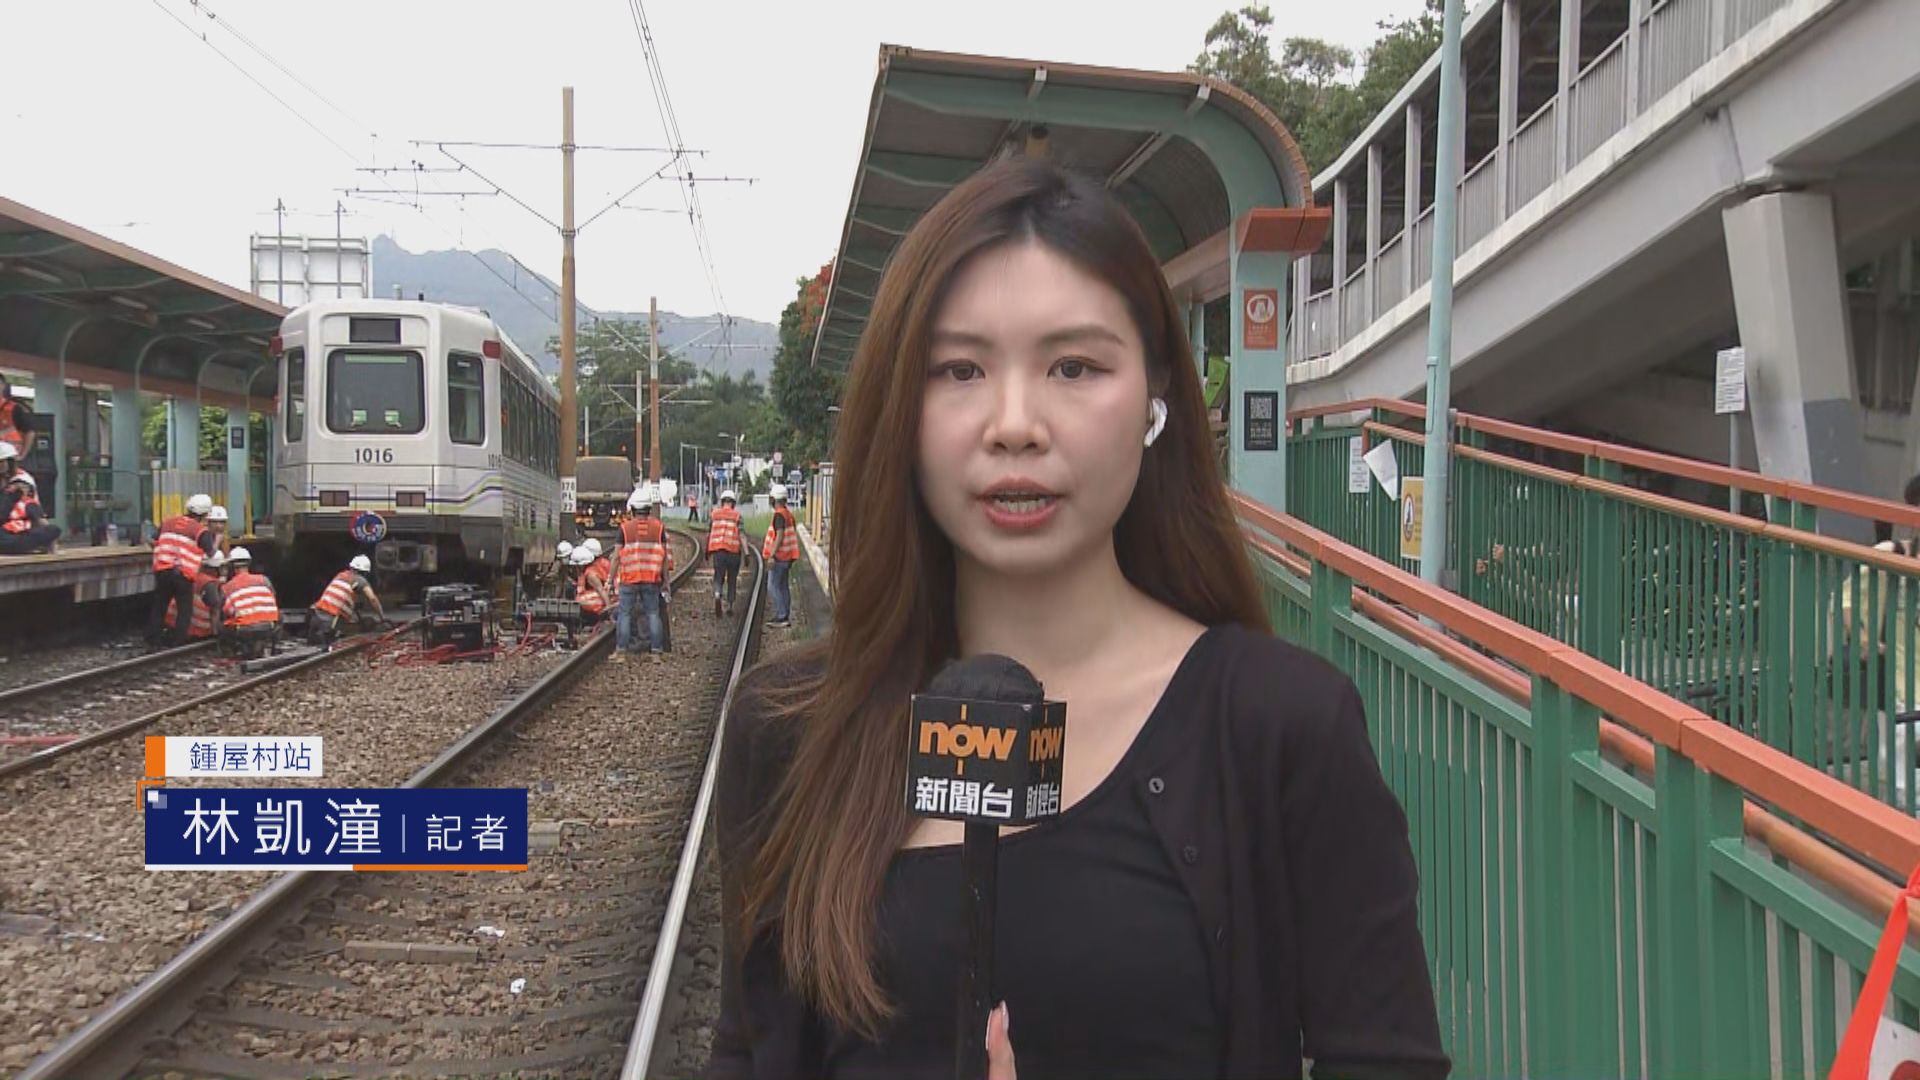 【記者直擊】鍾屋村站輕鐵脫軌 第二卡列車已駛離 職員換新混凝土板助市民過路